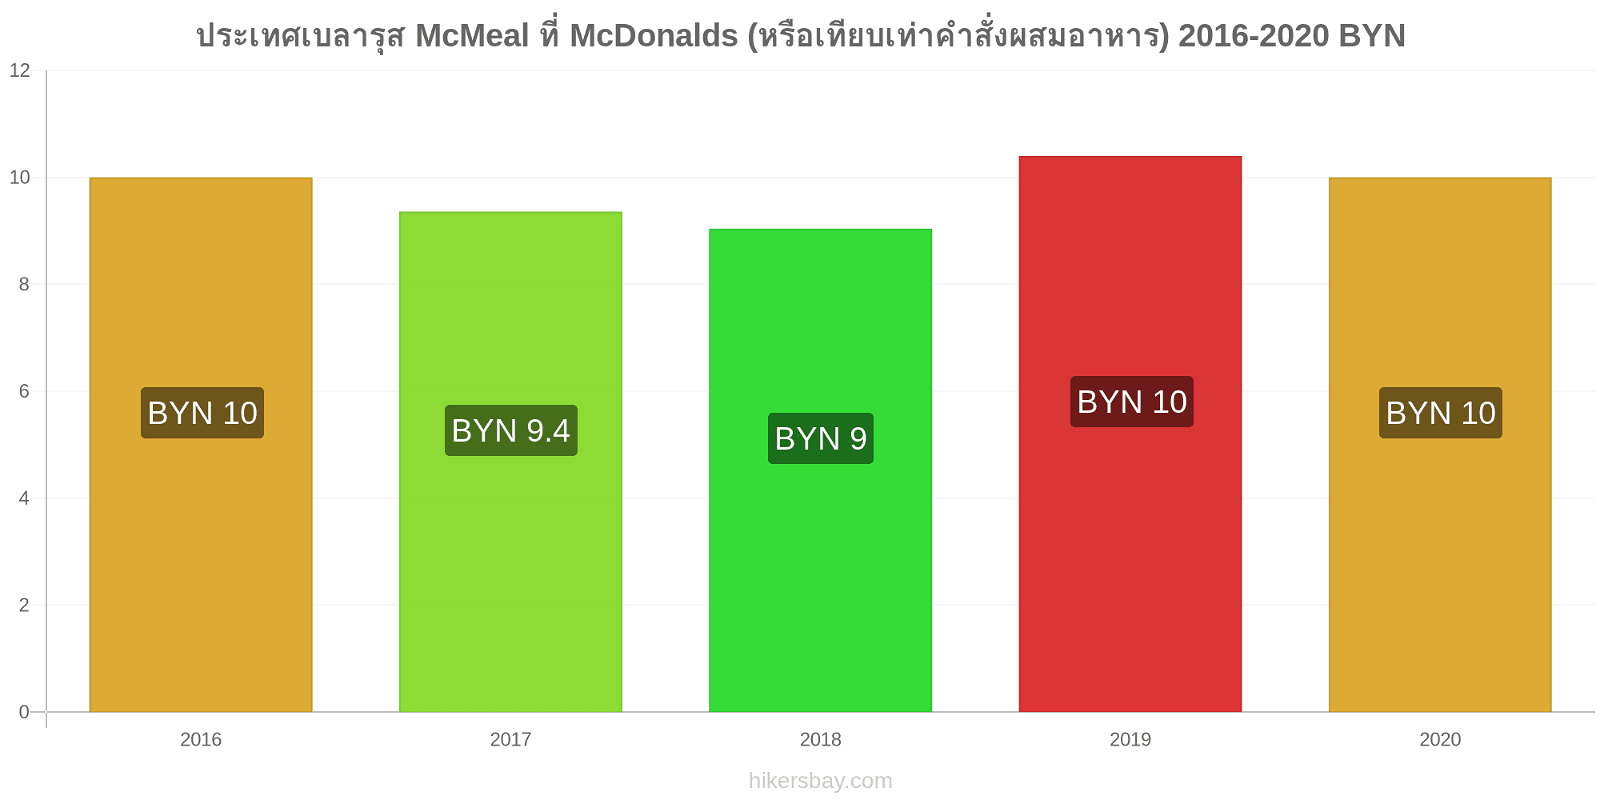 ประเทศเบลารุส การเปลี่ยนแปลงราคา McMeal ที่ McDonalds (หรือเทียบเท่าคำสั่งผสมอาหาร) hikersbay.com